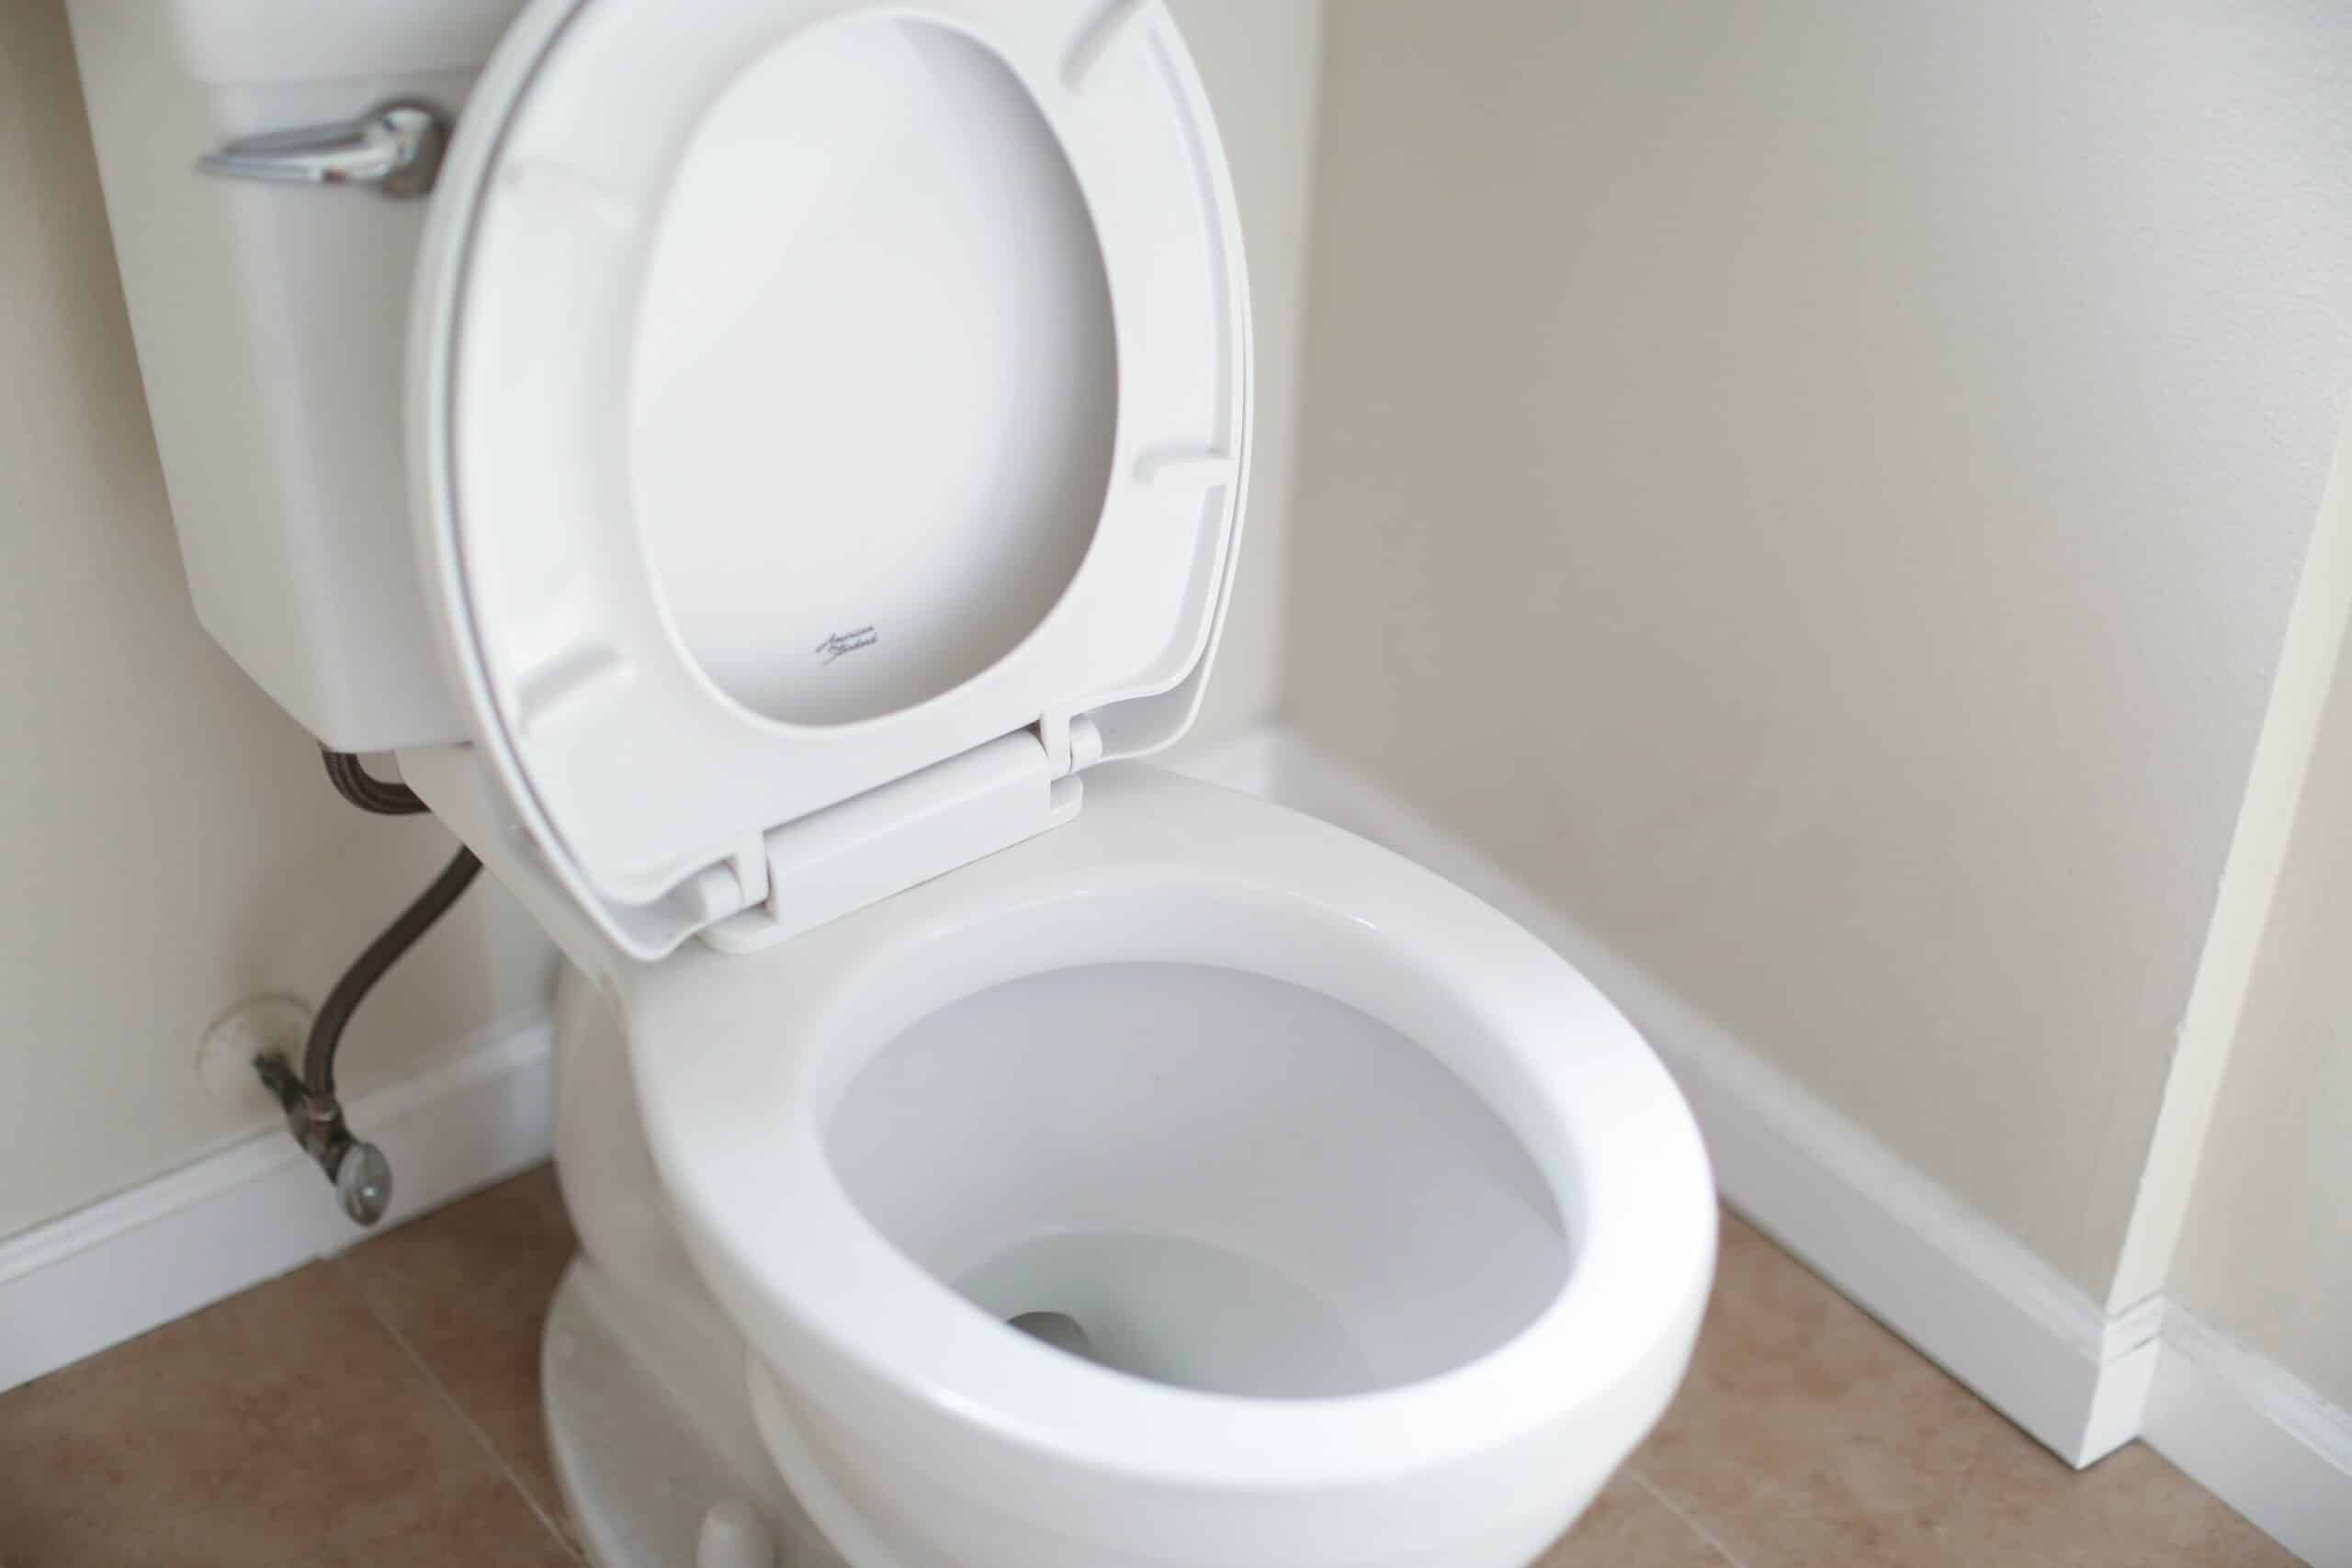 Maricopa, AZ Area Toilet Flushing Properly